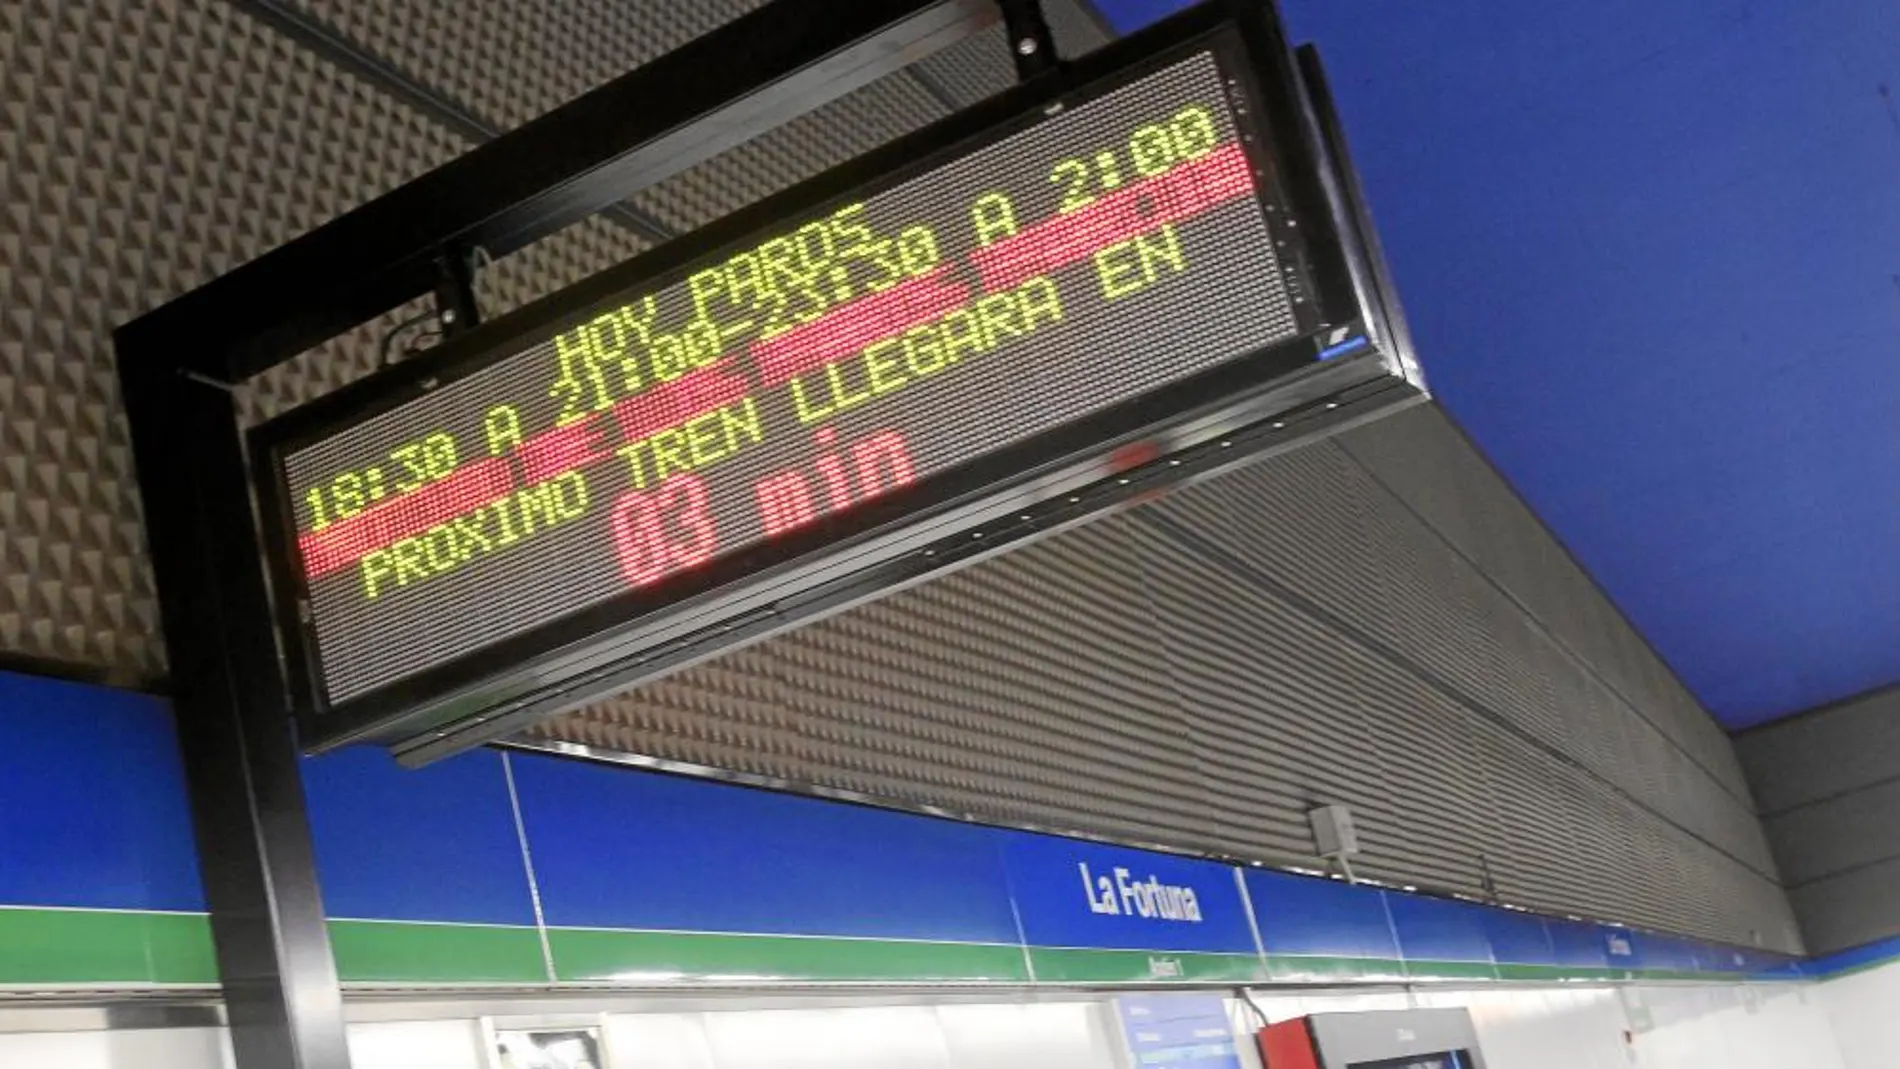 El mes pasado, los usuarios de Metro de Madrid ya sufrieron paros, ya que el seguimiento de la huelga fue masivo